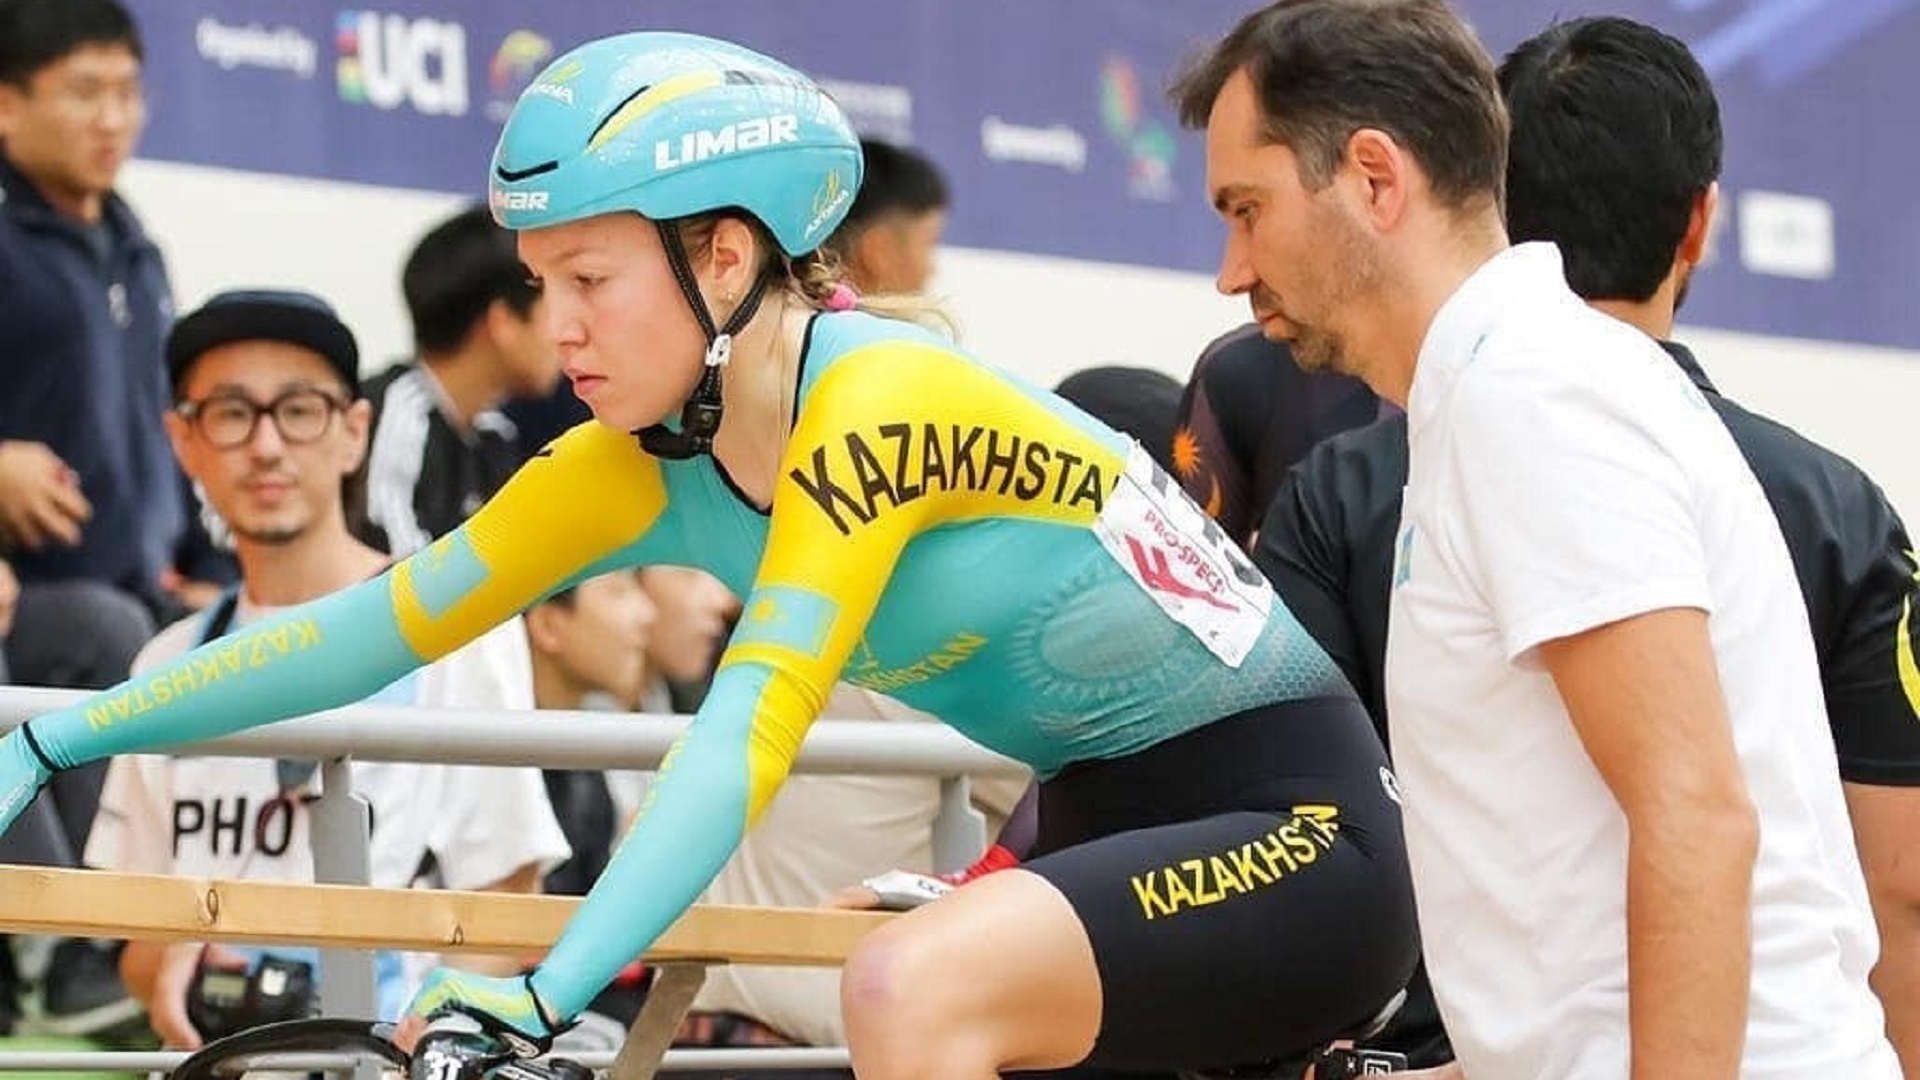 Казахстанская велосипедистка выиграла бронзовую медаль на Азиатских играх - Bizmedia.kz